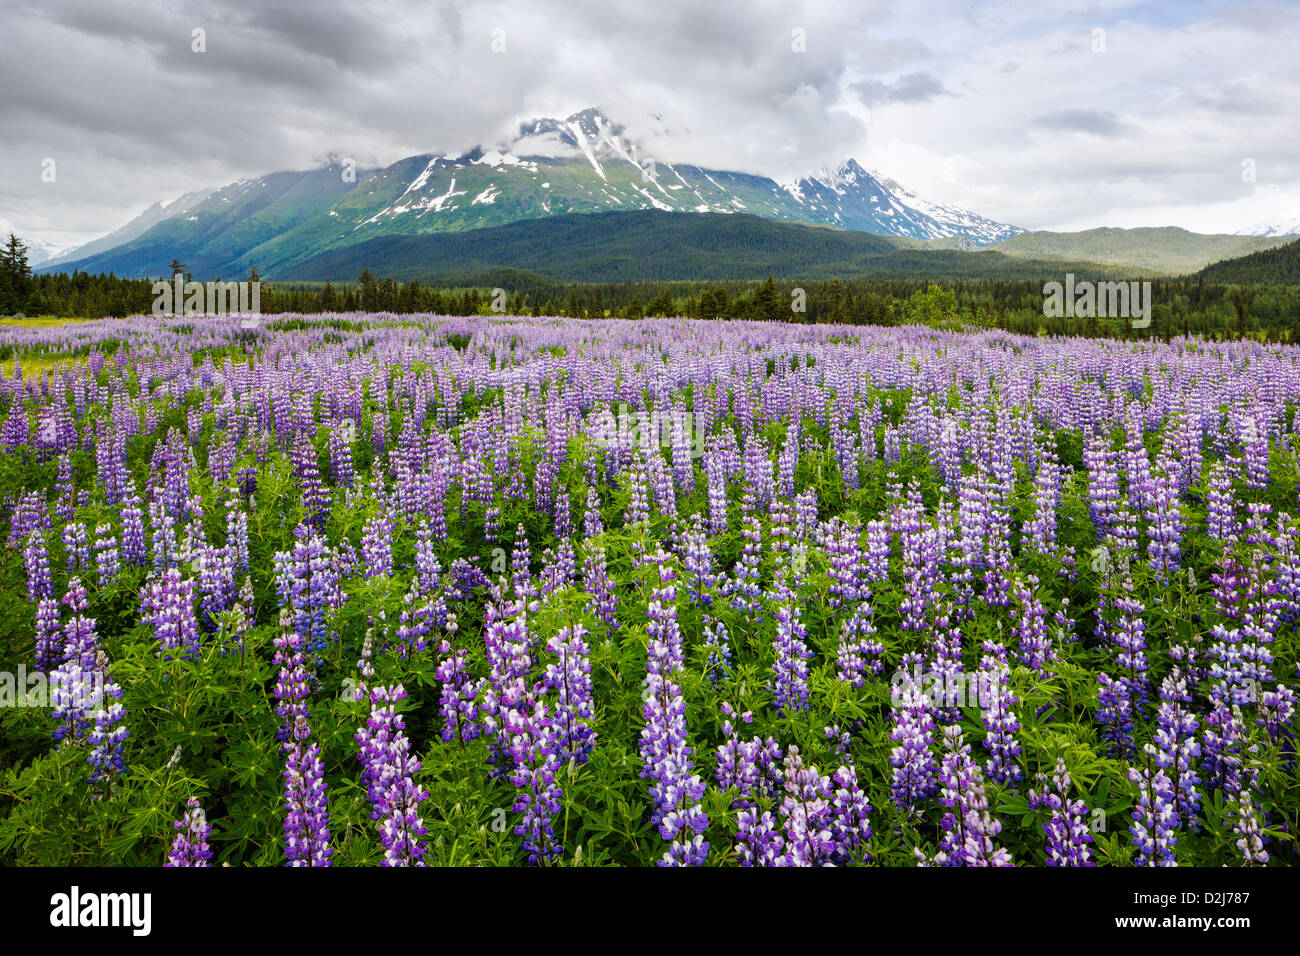 Lupin arctique, Lupinus arcticus, fleurs violettes en fleurs, péninsule de Kenai, forêt de Chugach NAT'l, Alaska, montagne de Sheep au-delà. Banque D'Images